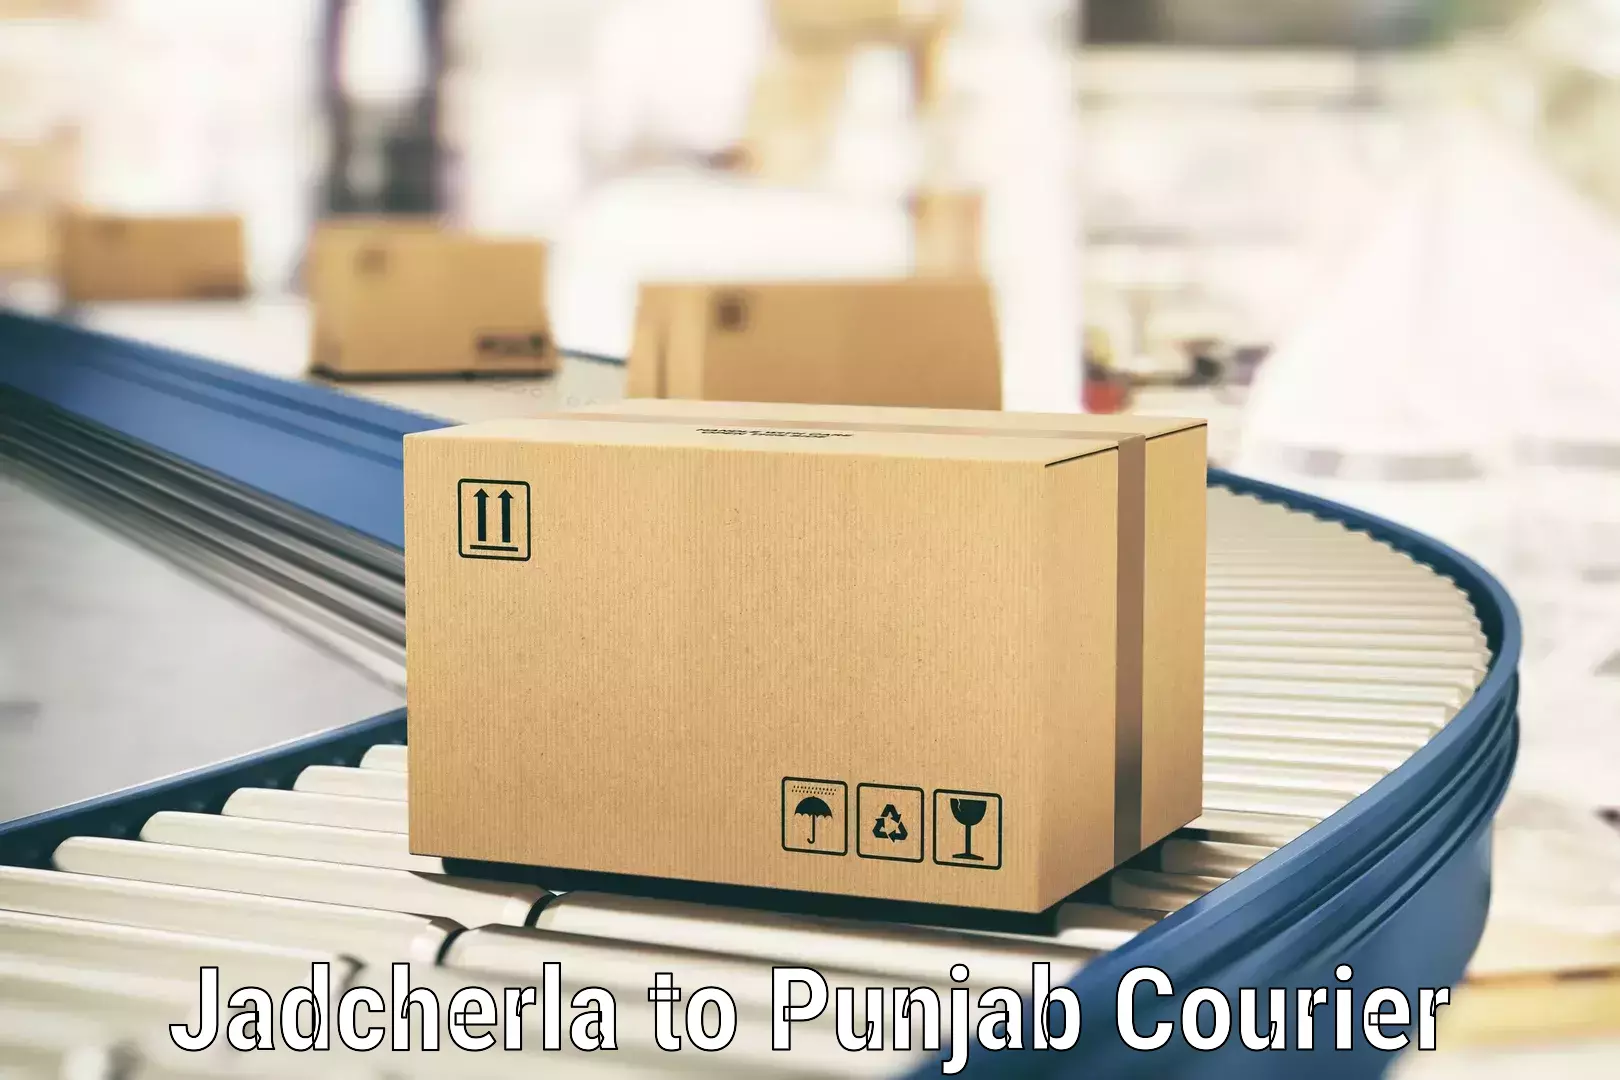 Customer-oriented courier services Jadcherla to Sirhind Fatehgarh